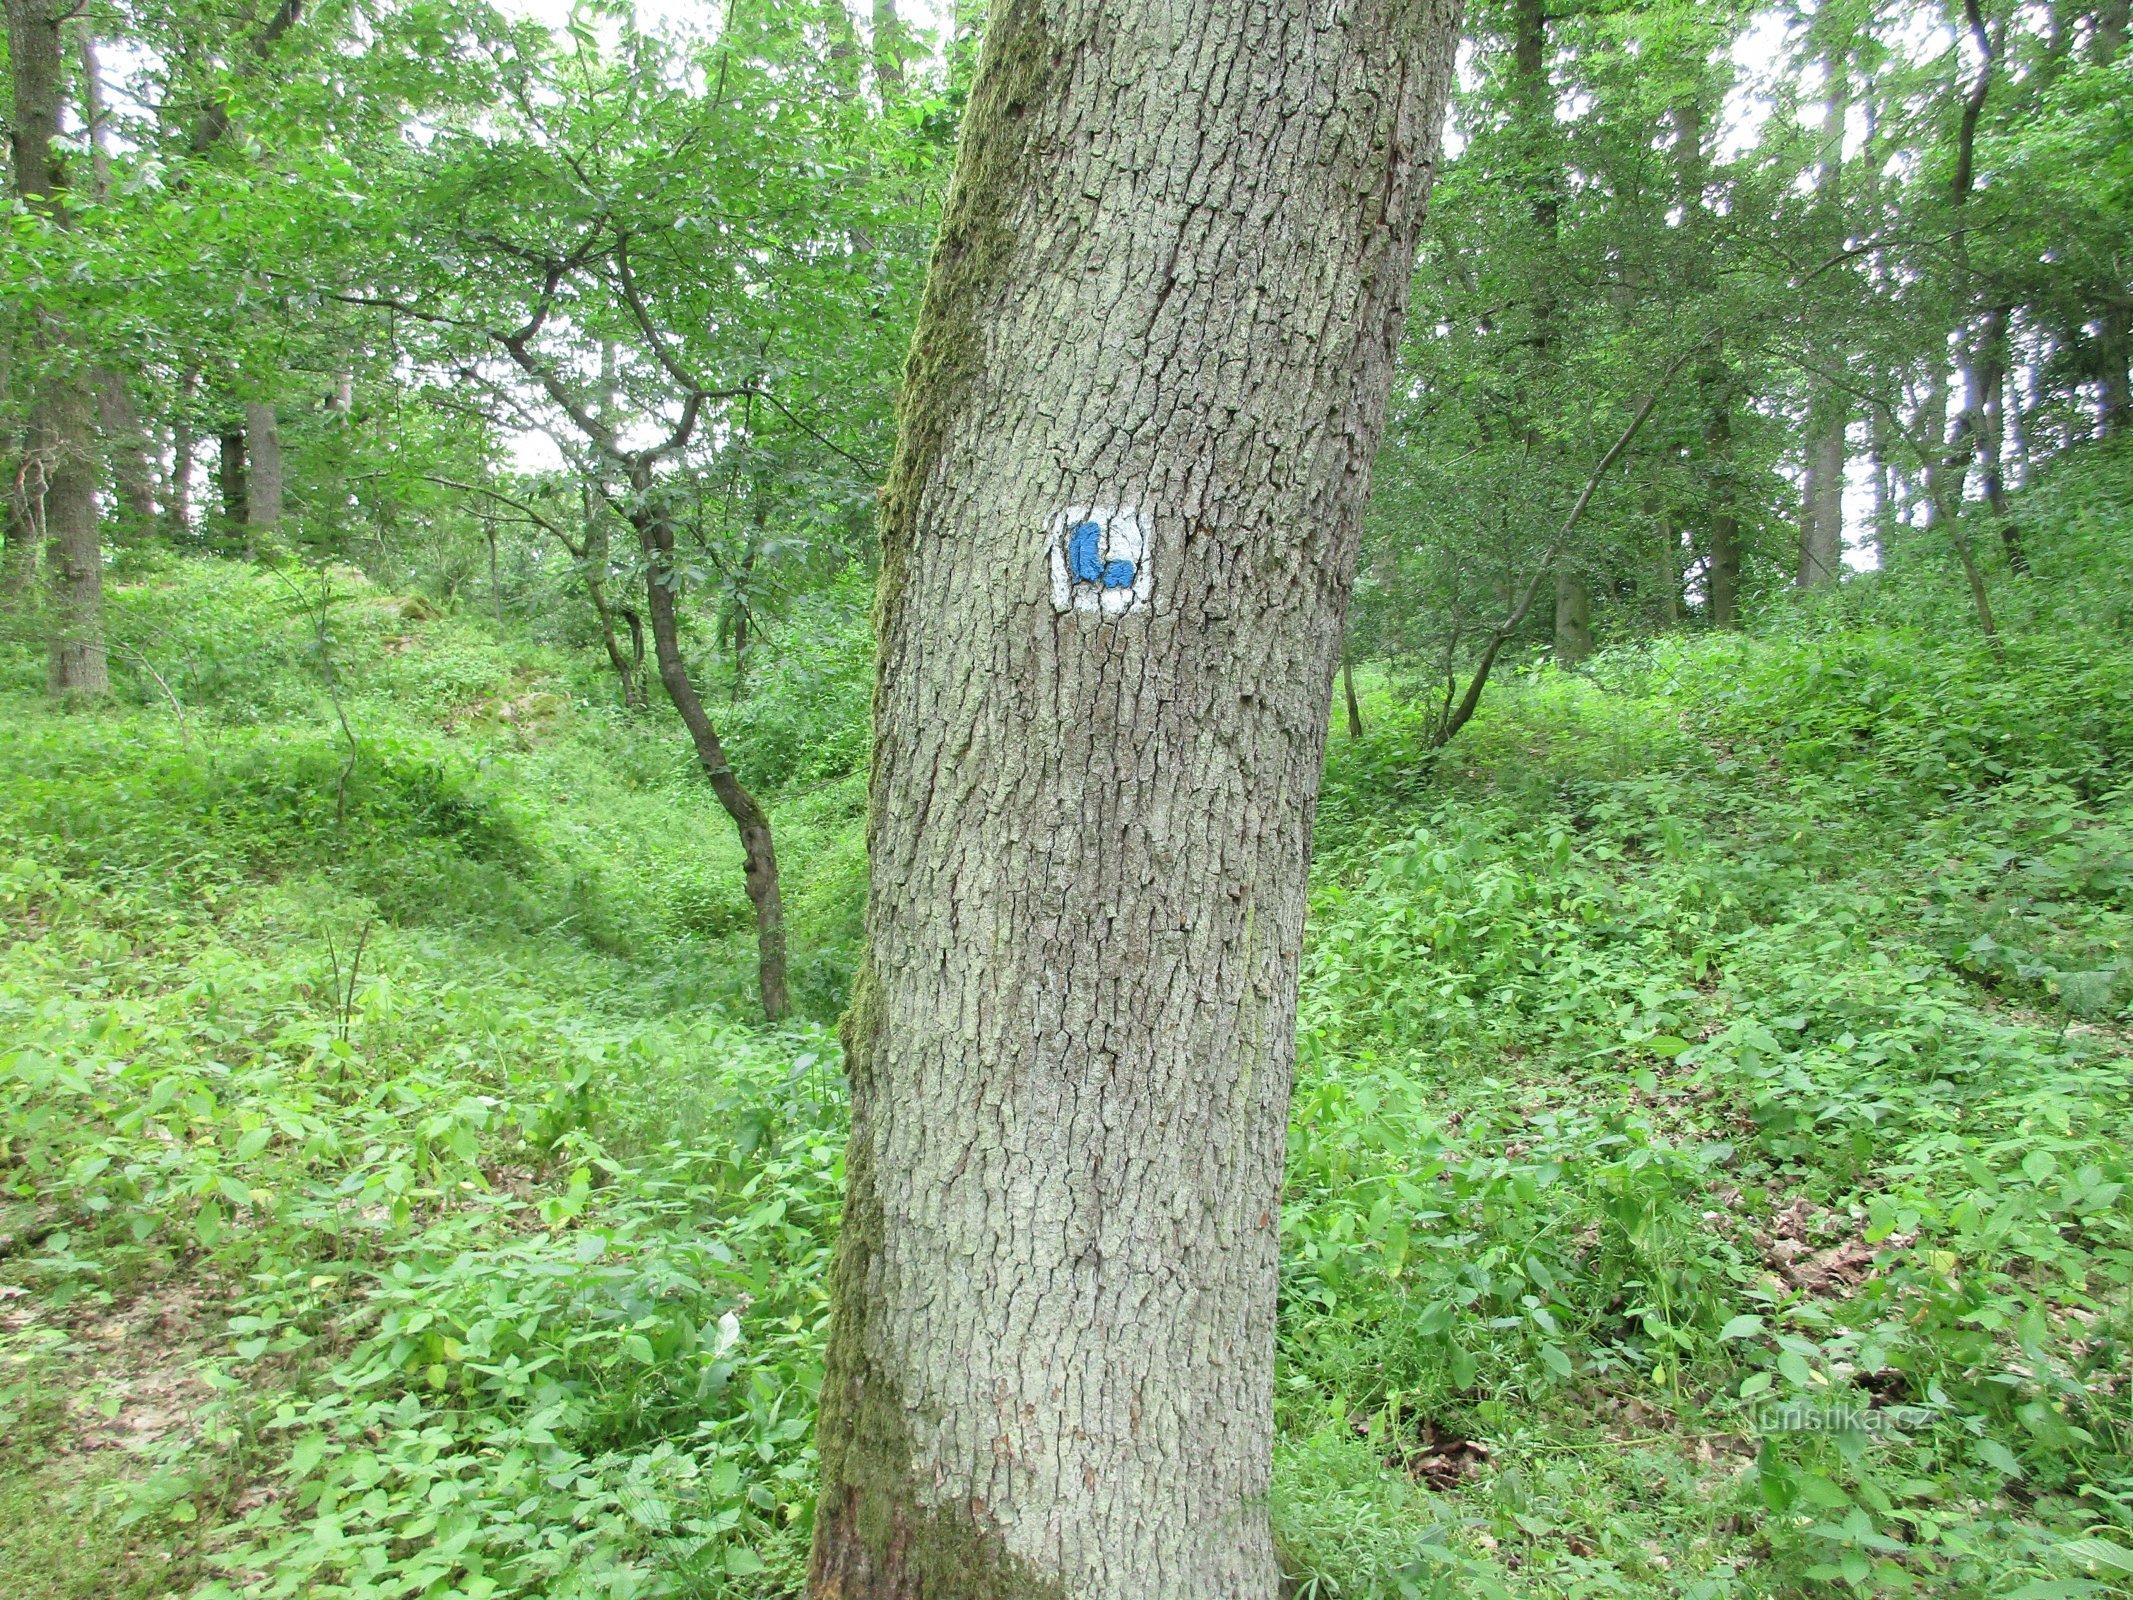 σημάδι στο δέντρο της στροφής προς το κέντρο του λόφου